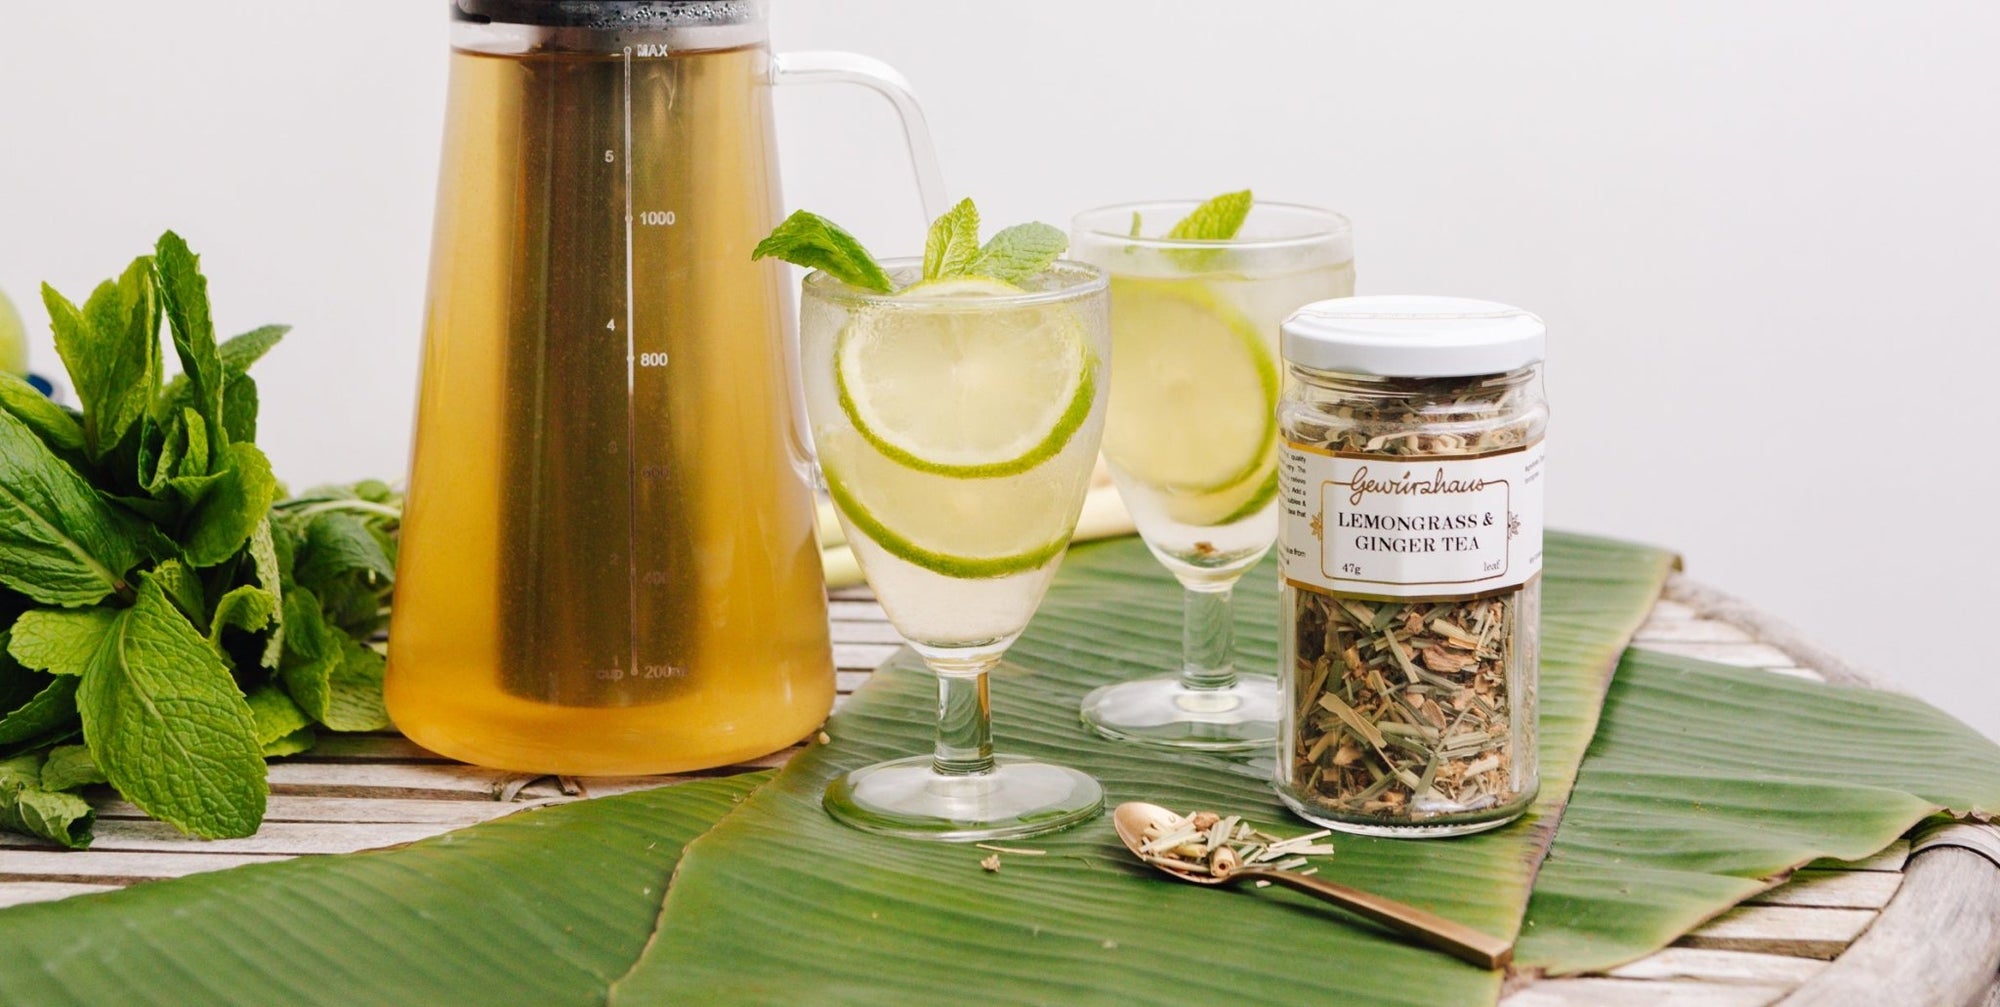 Lemongrass & Ginger Iced Tea - Gewürzhaus